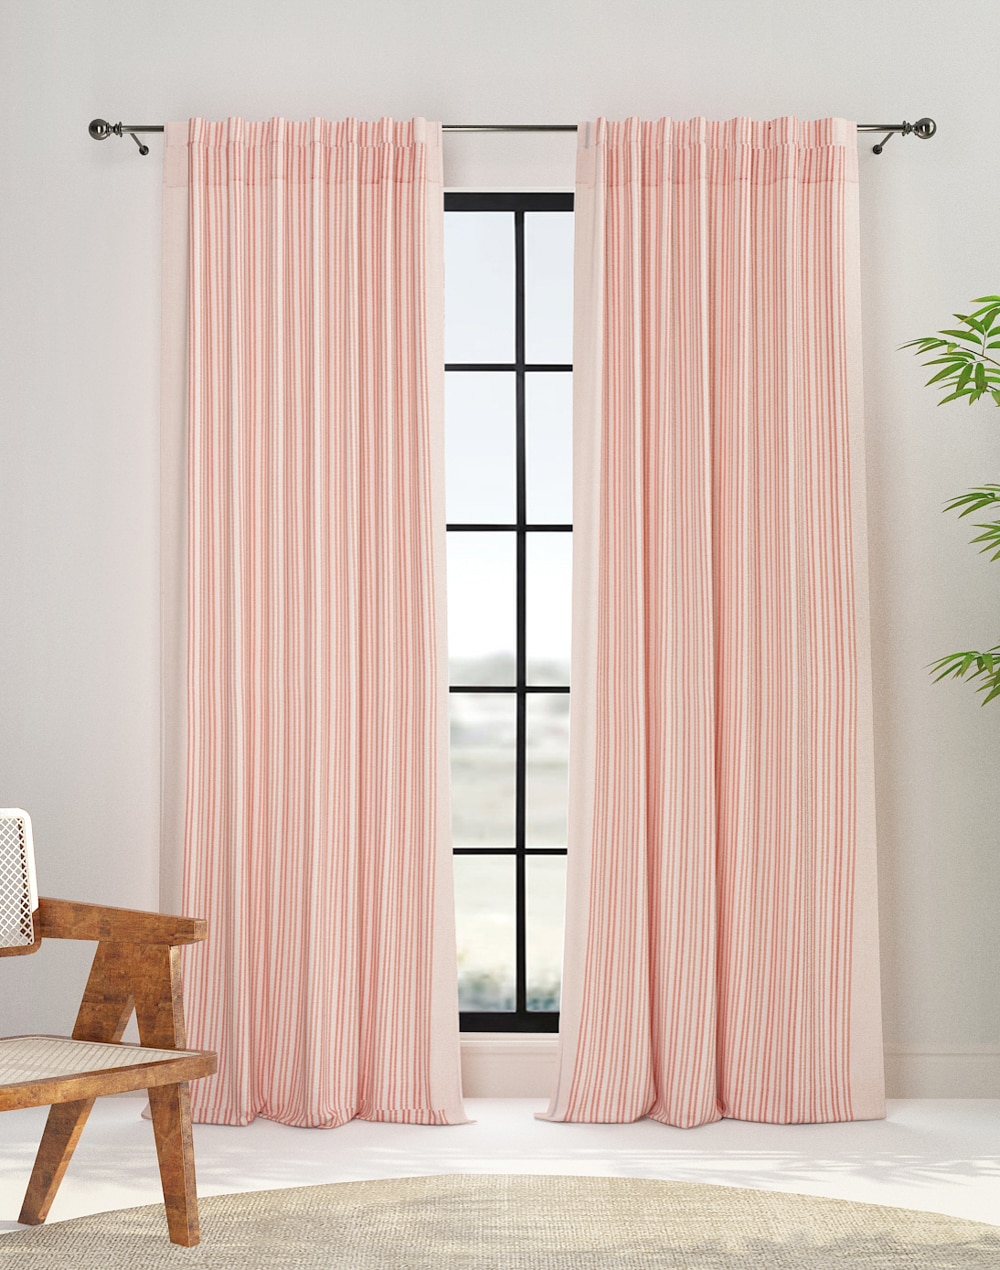 Vardania Naseen Cotton Woven Curtain | 1pc